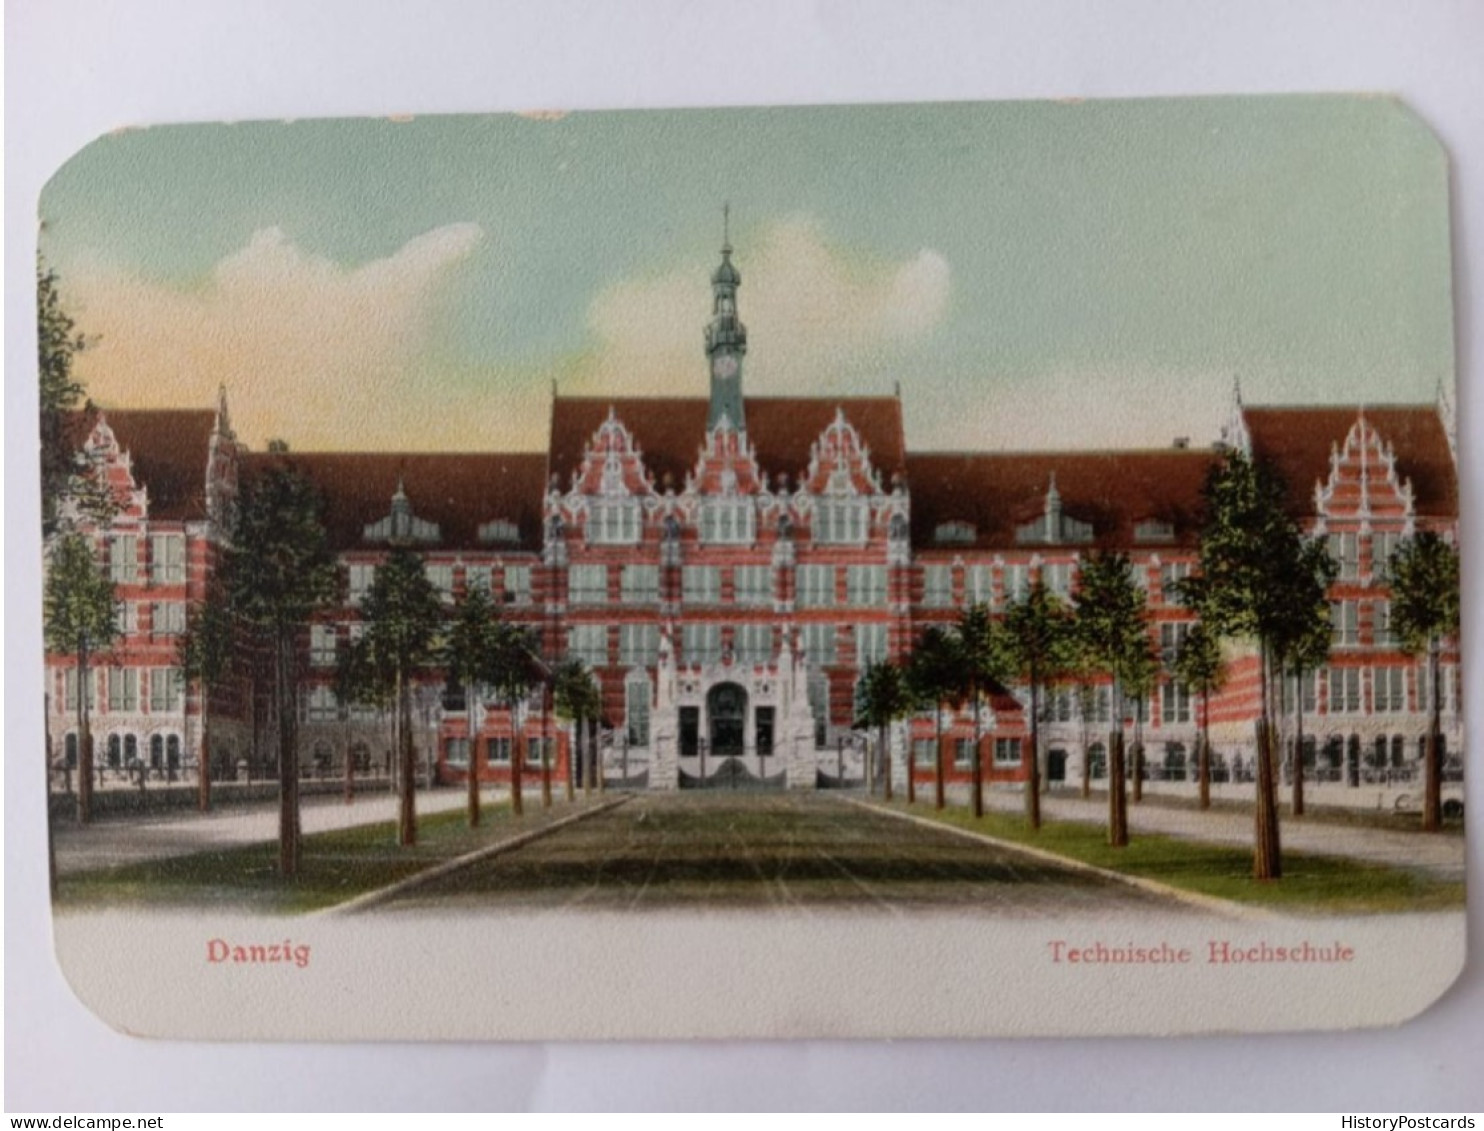 Danzig, Technische Hochschule, 1905 - Danzig